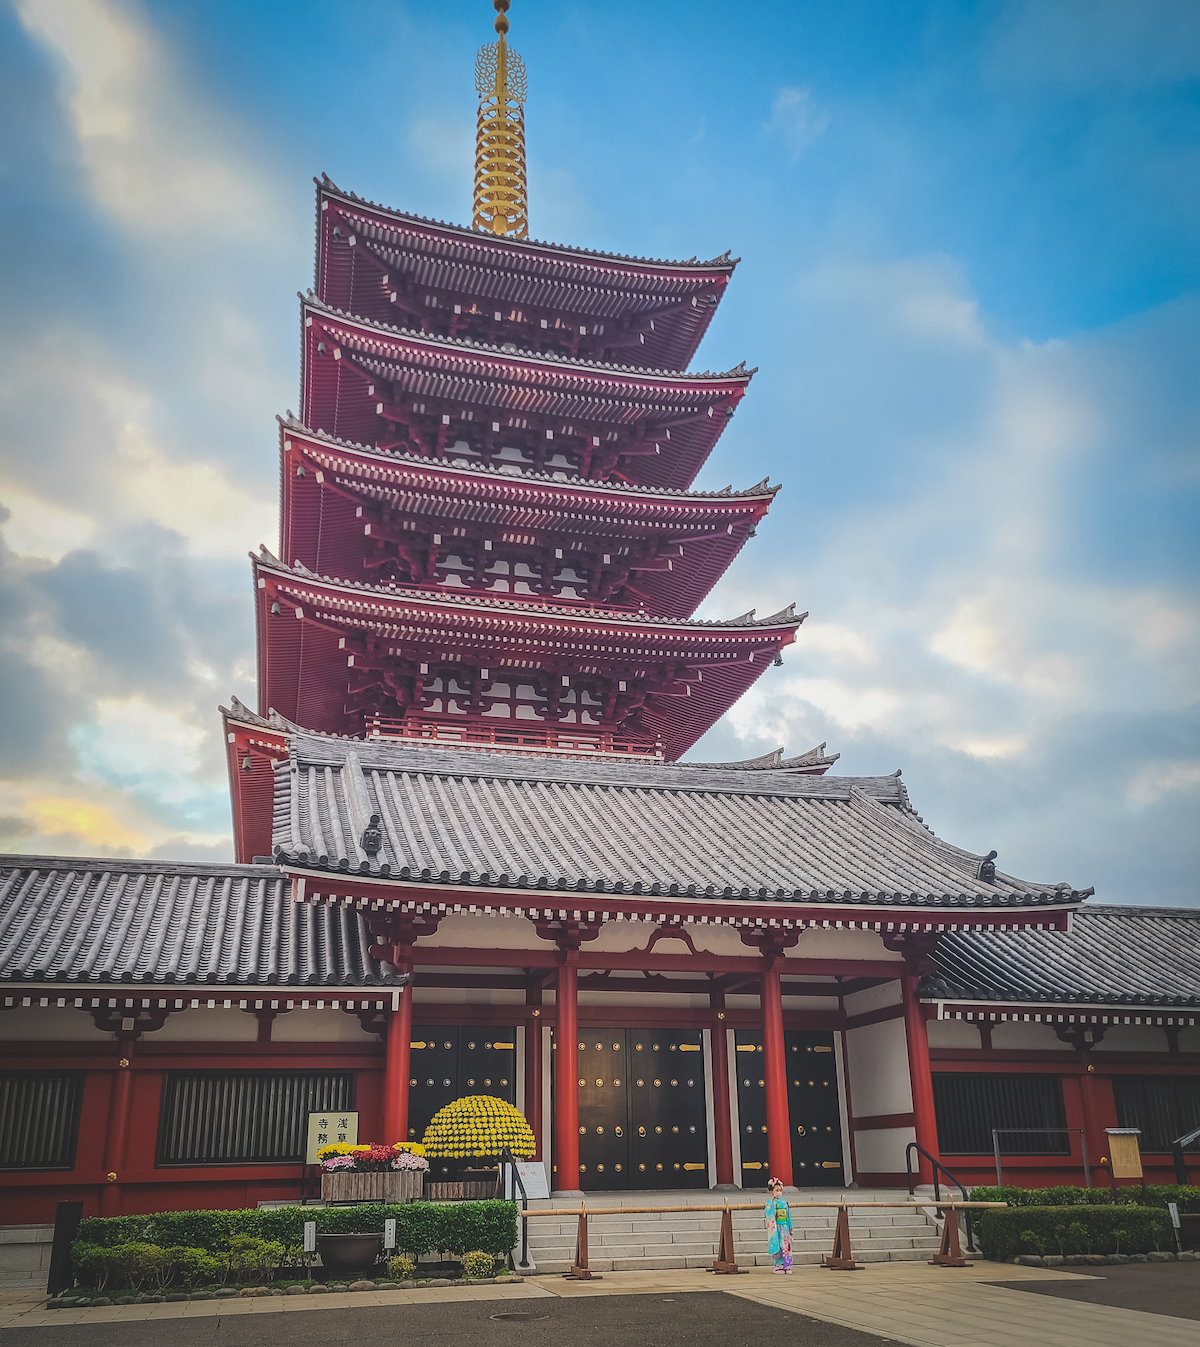 The pagoda nearby, part of Sensoji Temple